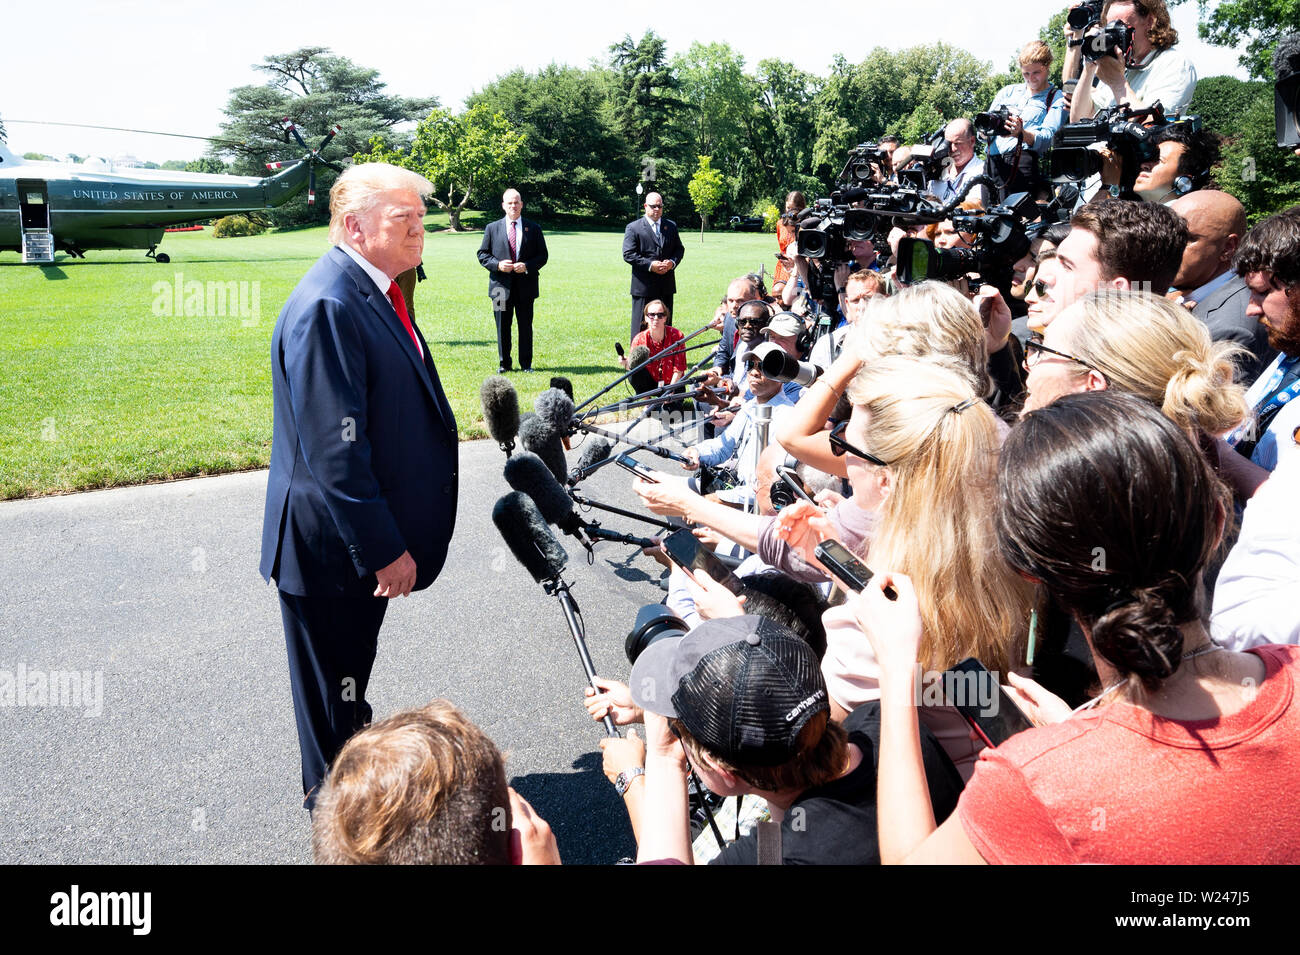 Le président Donald Trump près de la pelouse Sud de la Maison Blanche s'adressant aux journalistes qu'il est sur le point de partir pour le week-end, à Washington, DC. Banque D'Images